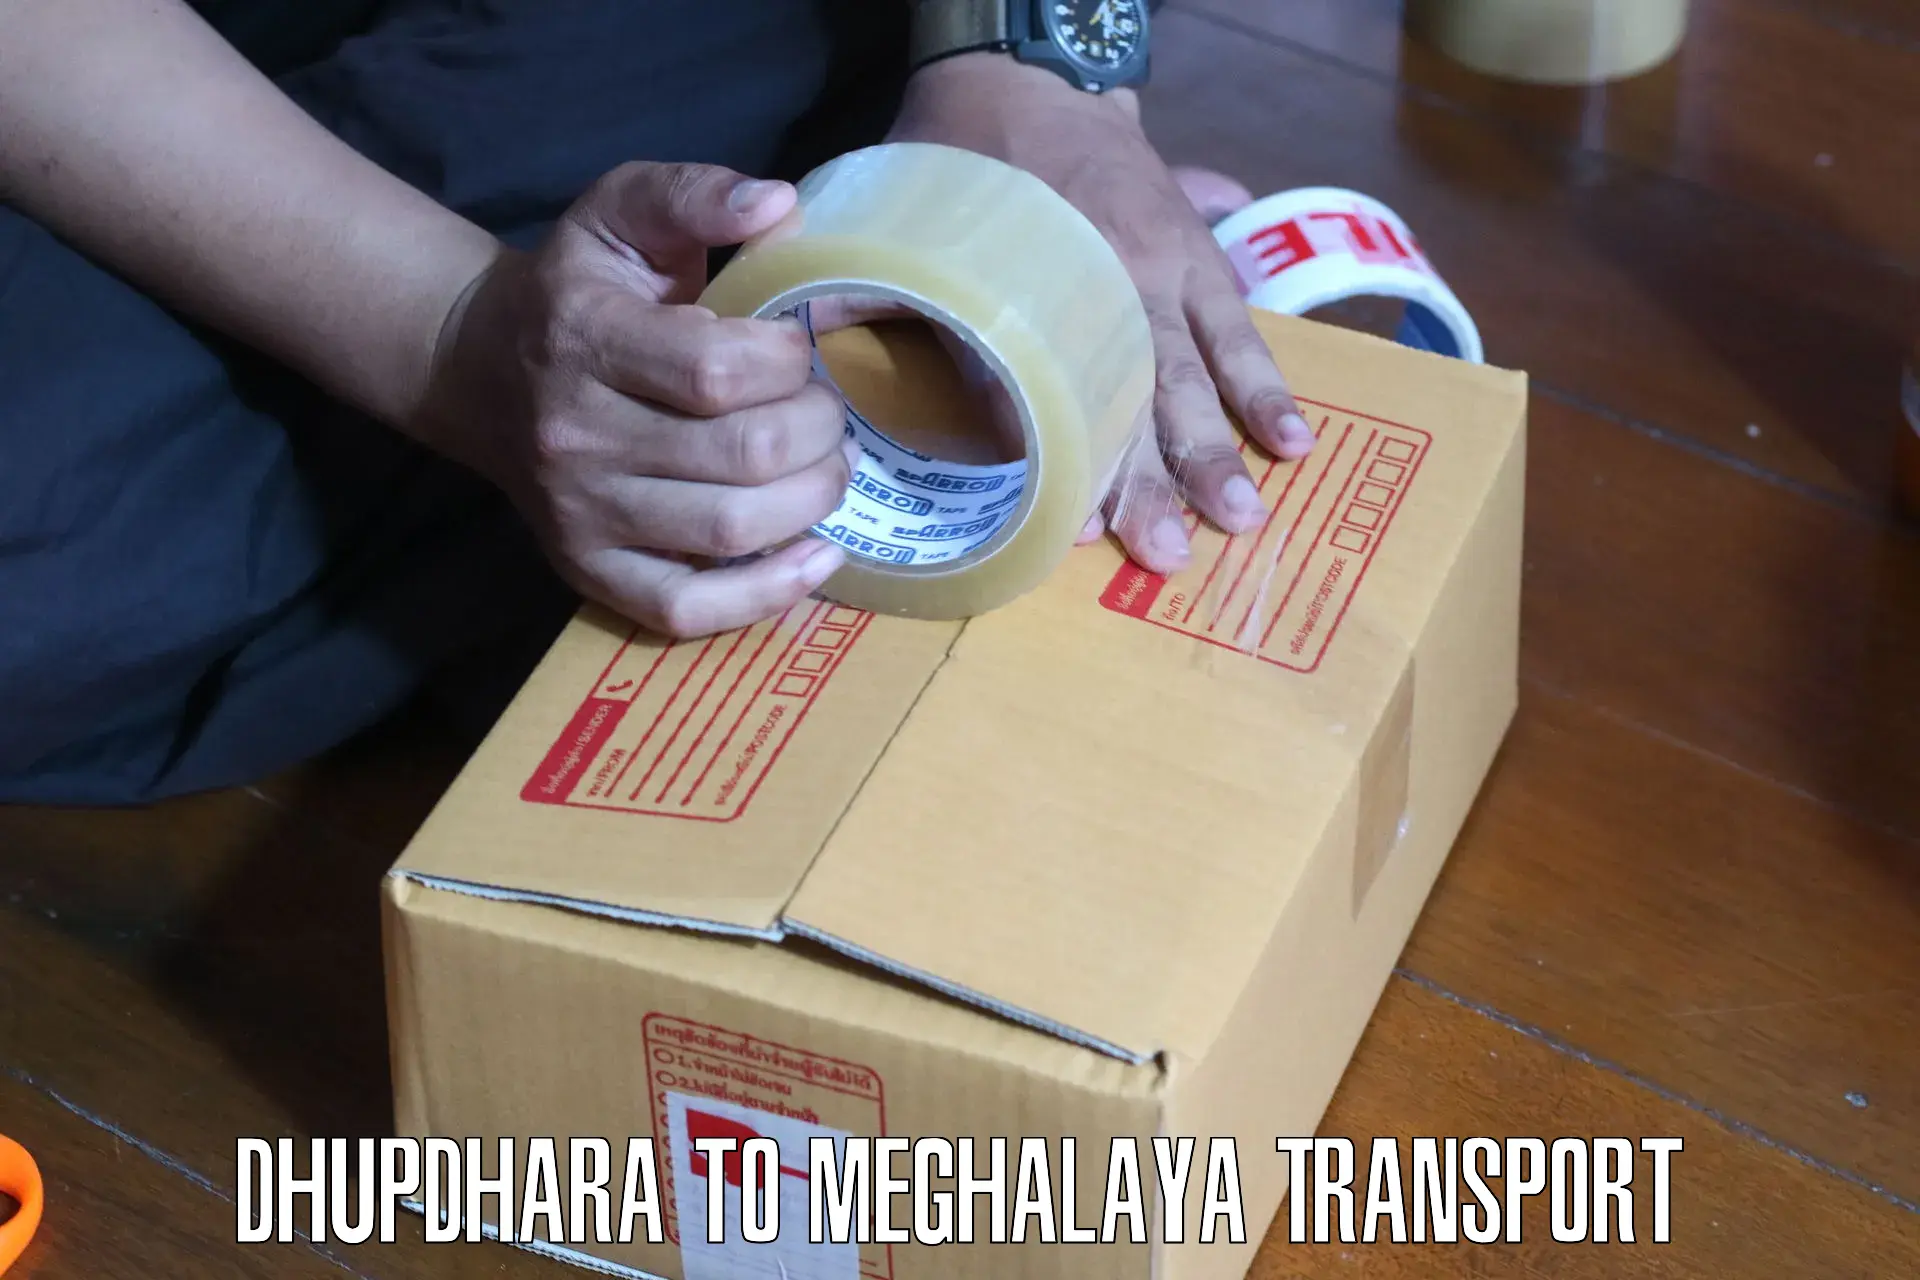 Shipping partner Dhupdhara to NIT Meghalaya